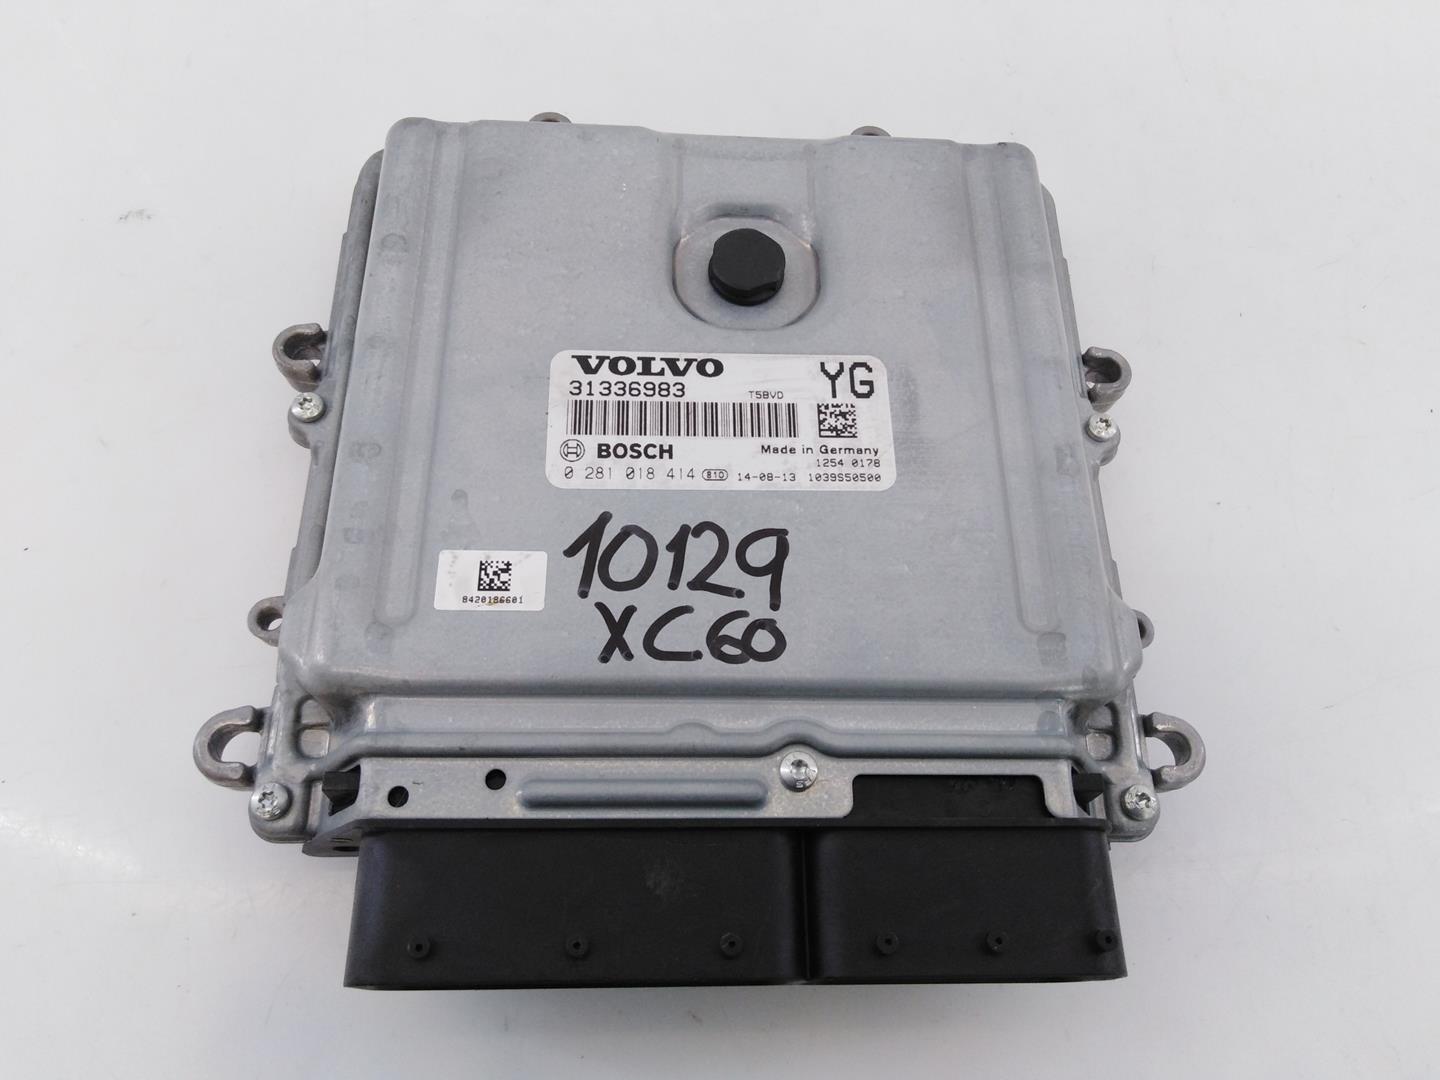 VOLVO XC60 1 generation (2008-2017) Блок управления двигателем 0281018414, 31336983, E3-B5-49-1 20955243